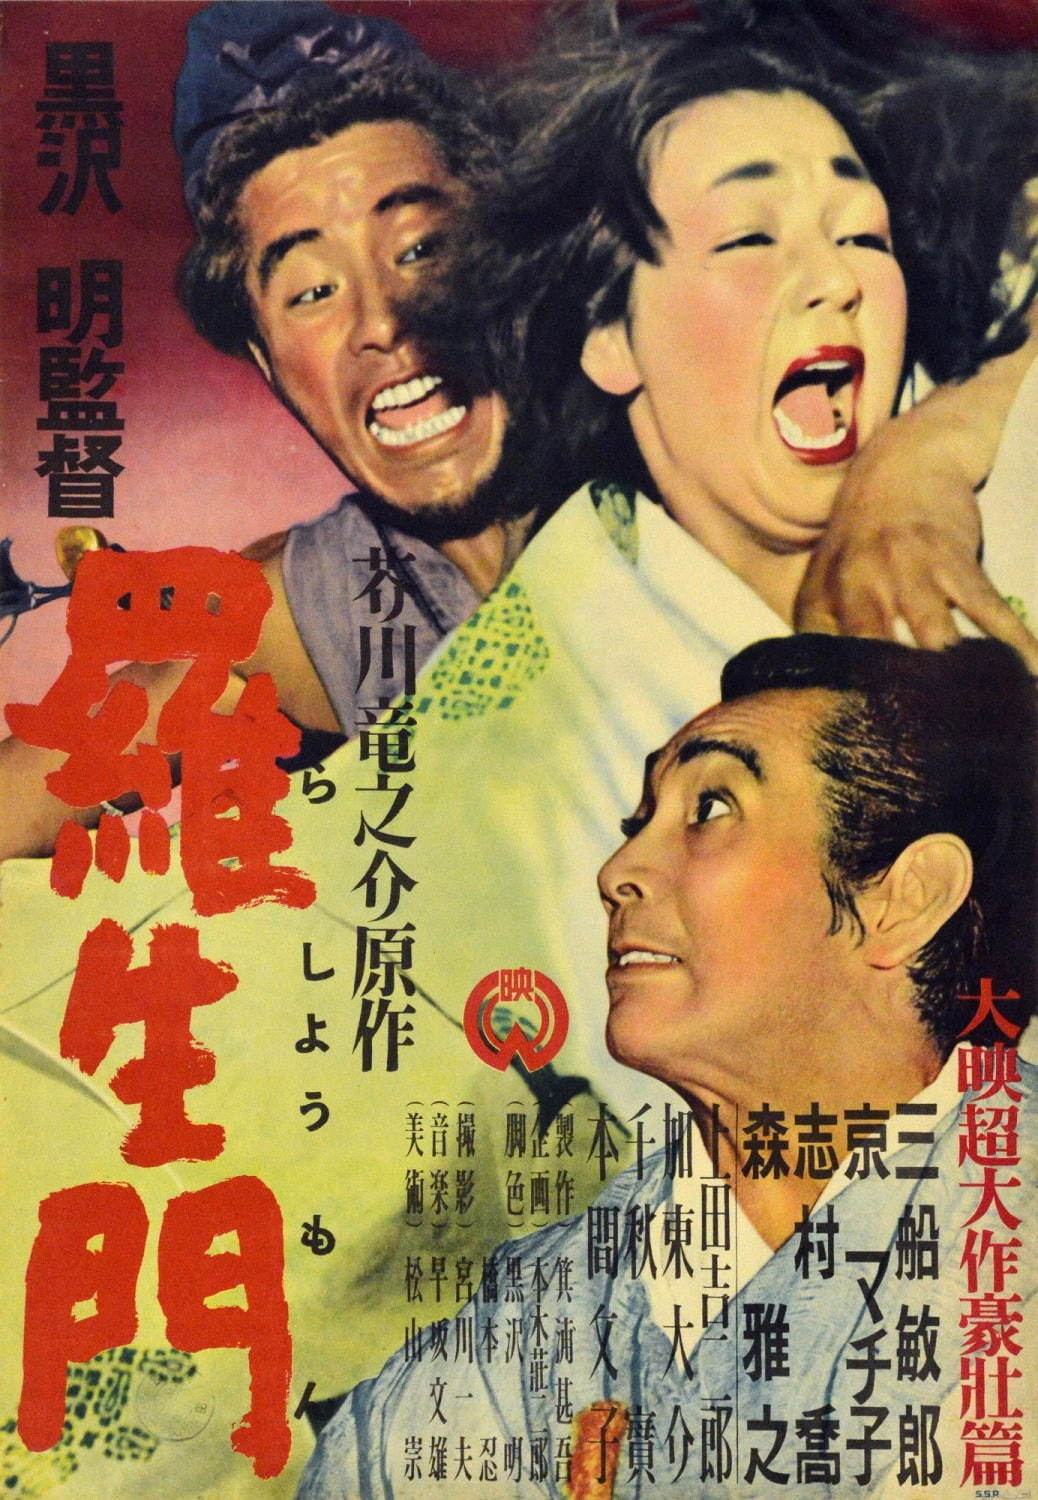 劇場公開オリジナルポスター
©KADOKAWA 1950 谷田部信和氏所蔵